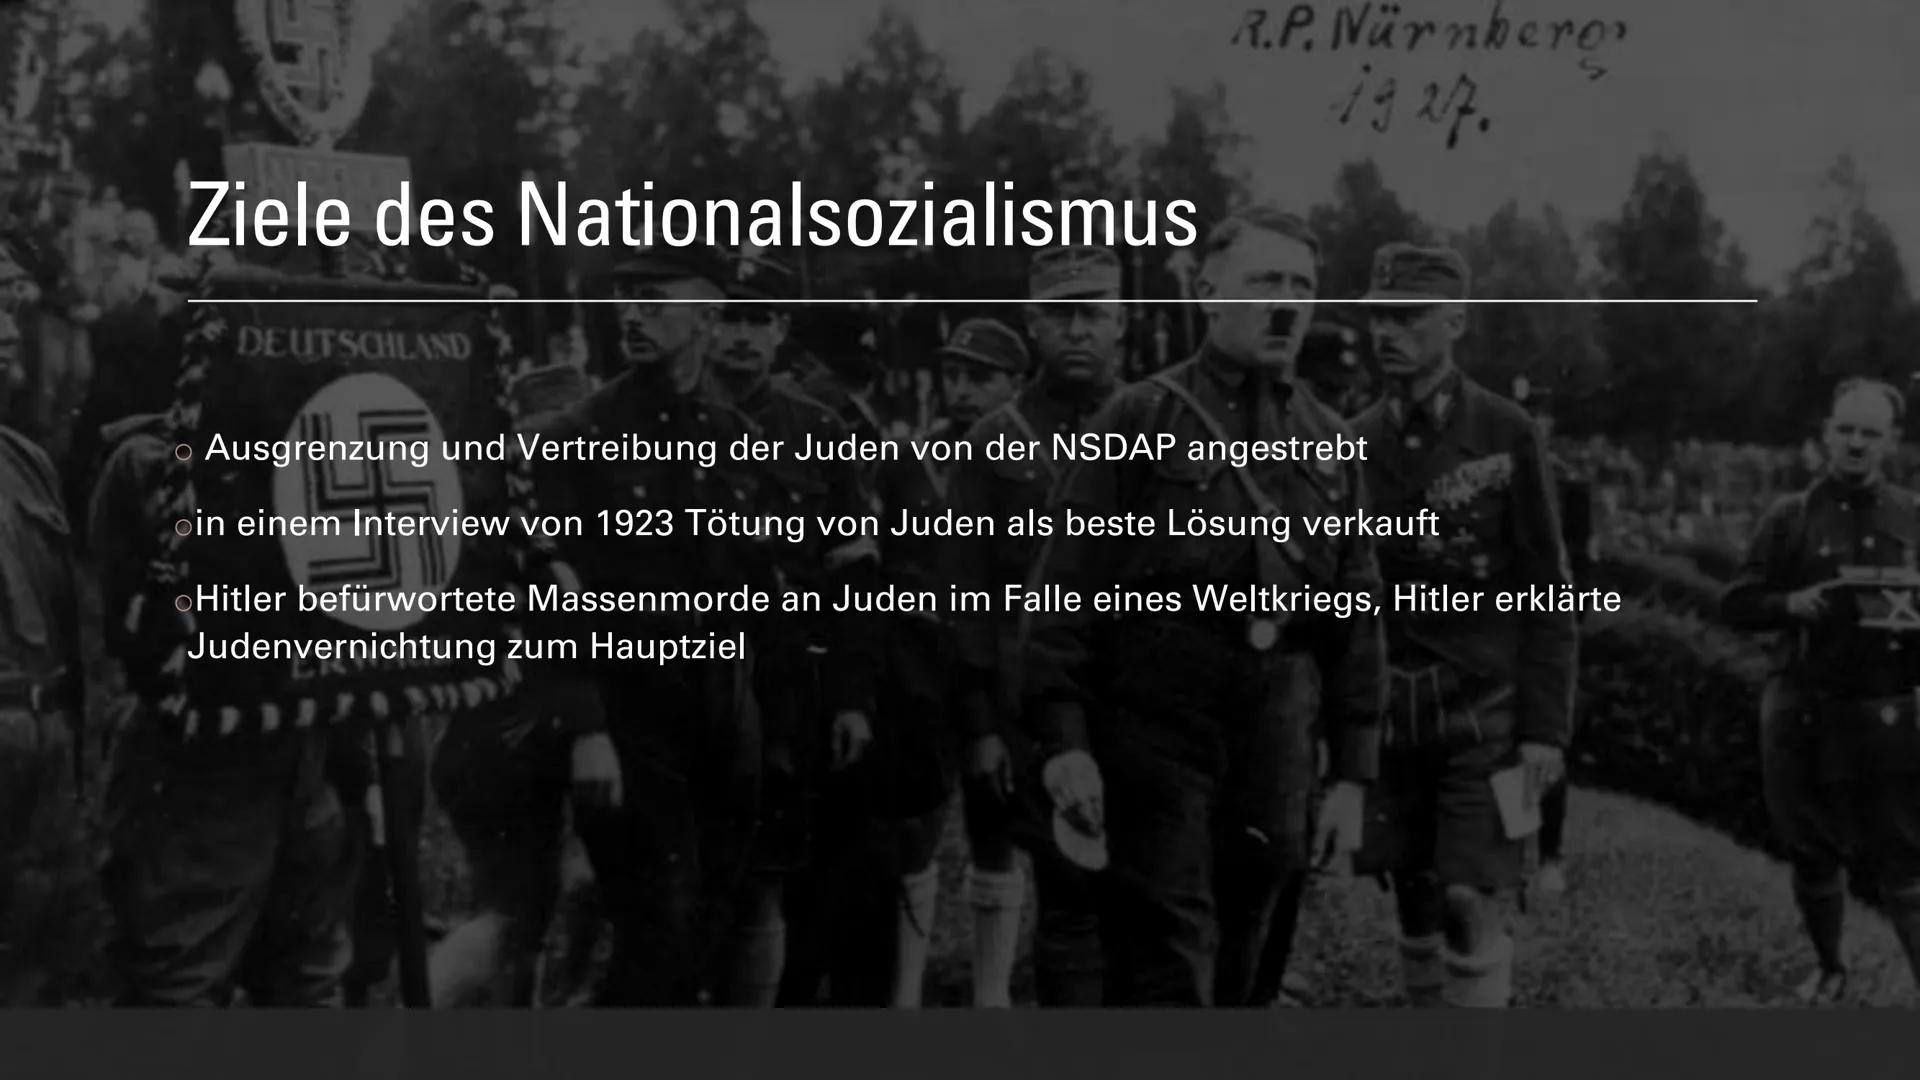 Judenverfolgung Präsentation
Ziele des Nationalsozialismus
●
●
Ausgrenzung und Vertreibung der Juden von der NSDAP Nationalsozialistische de